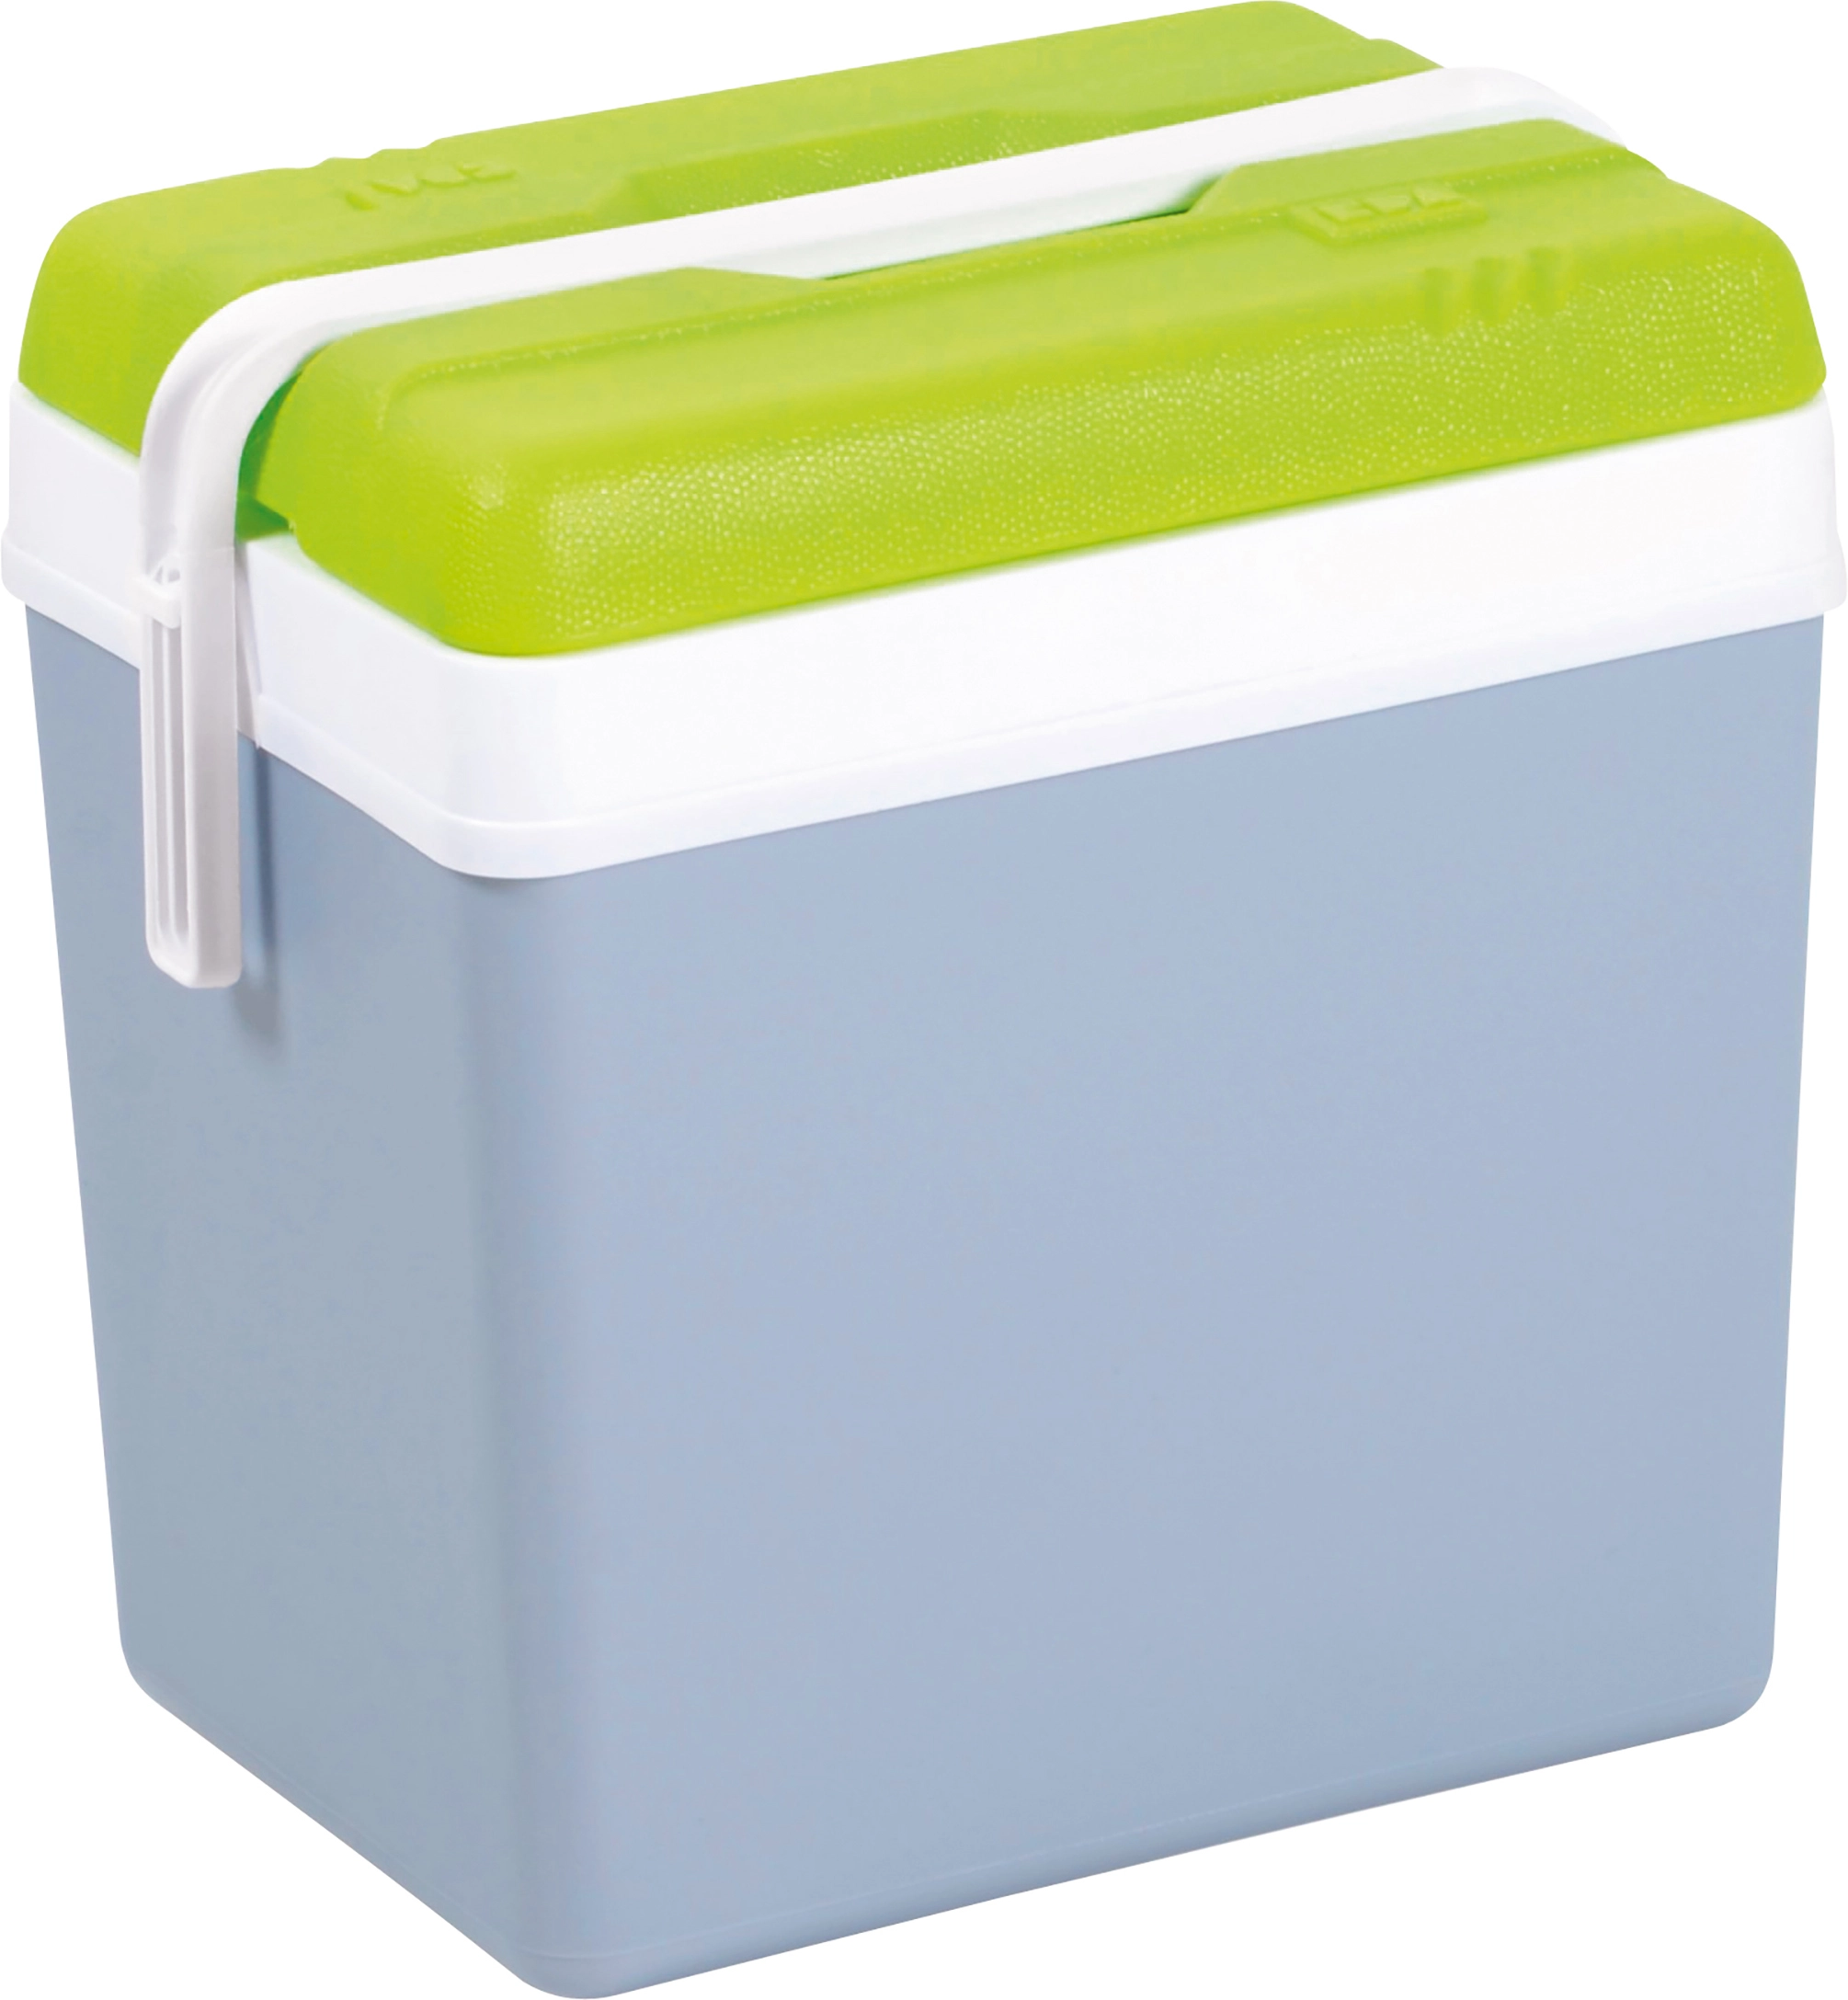 Kühlbox Perlgrau und Grün 24 l kaufen bei OBI